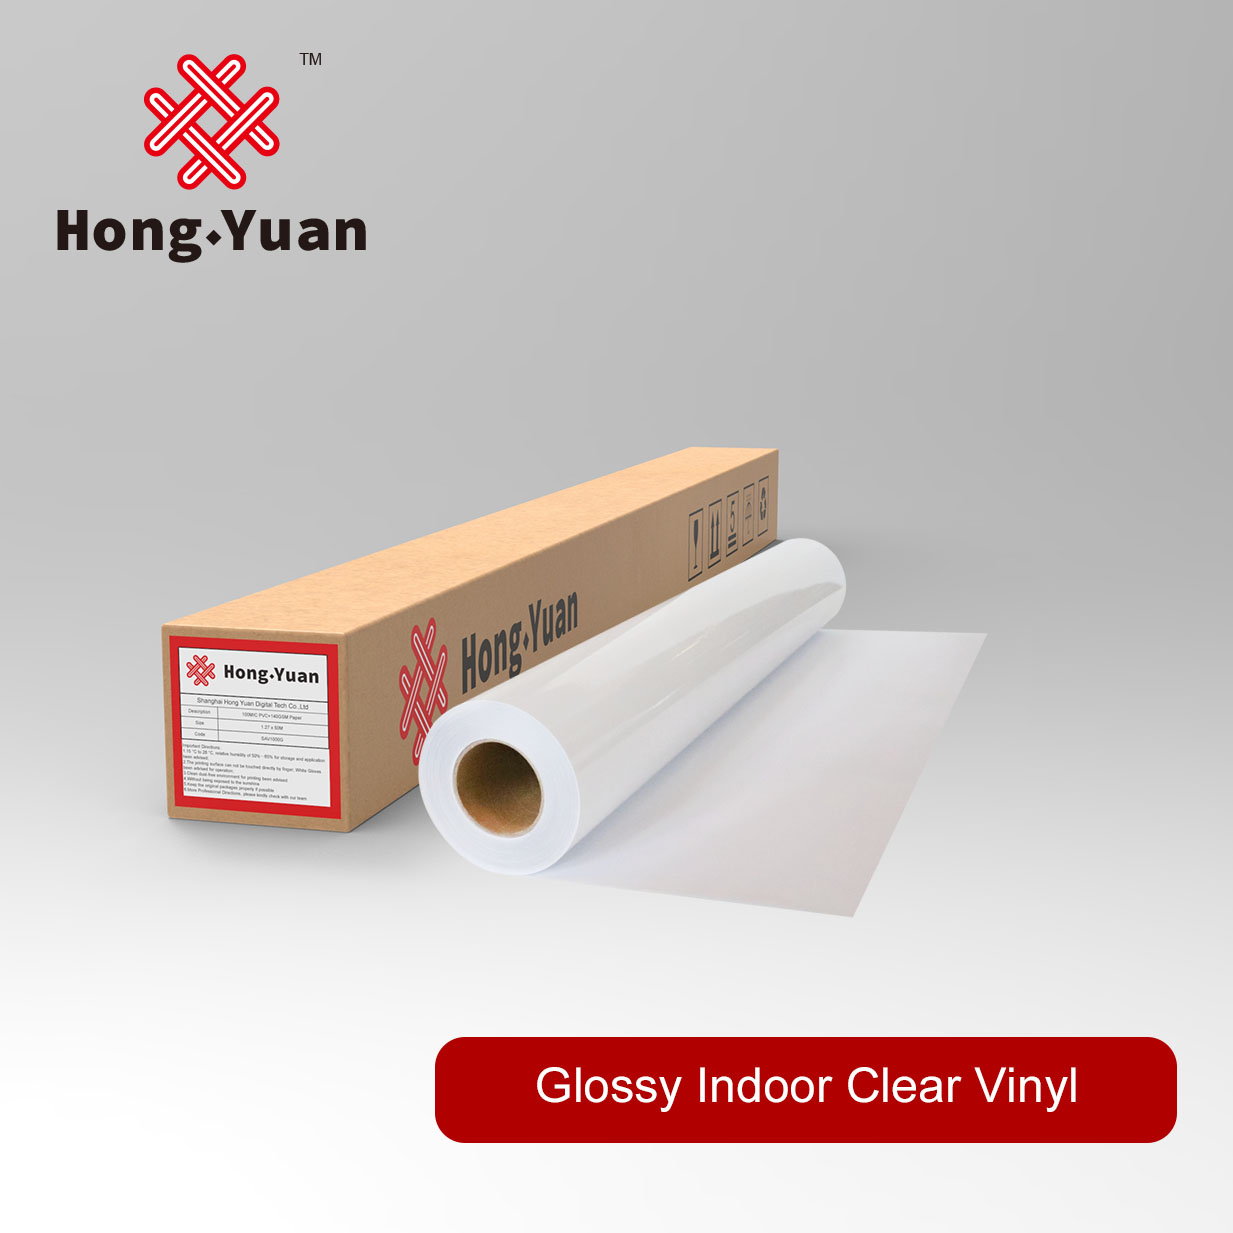 Glossy Indoor Clear Vinyl DAV2000T